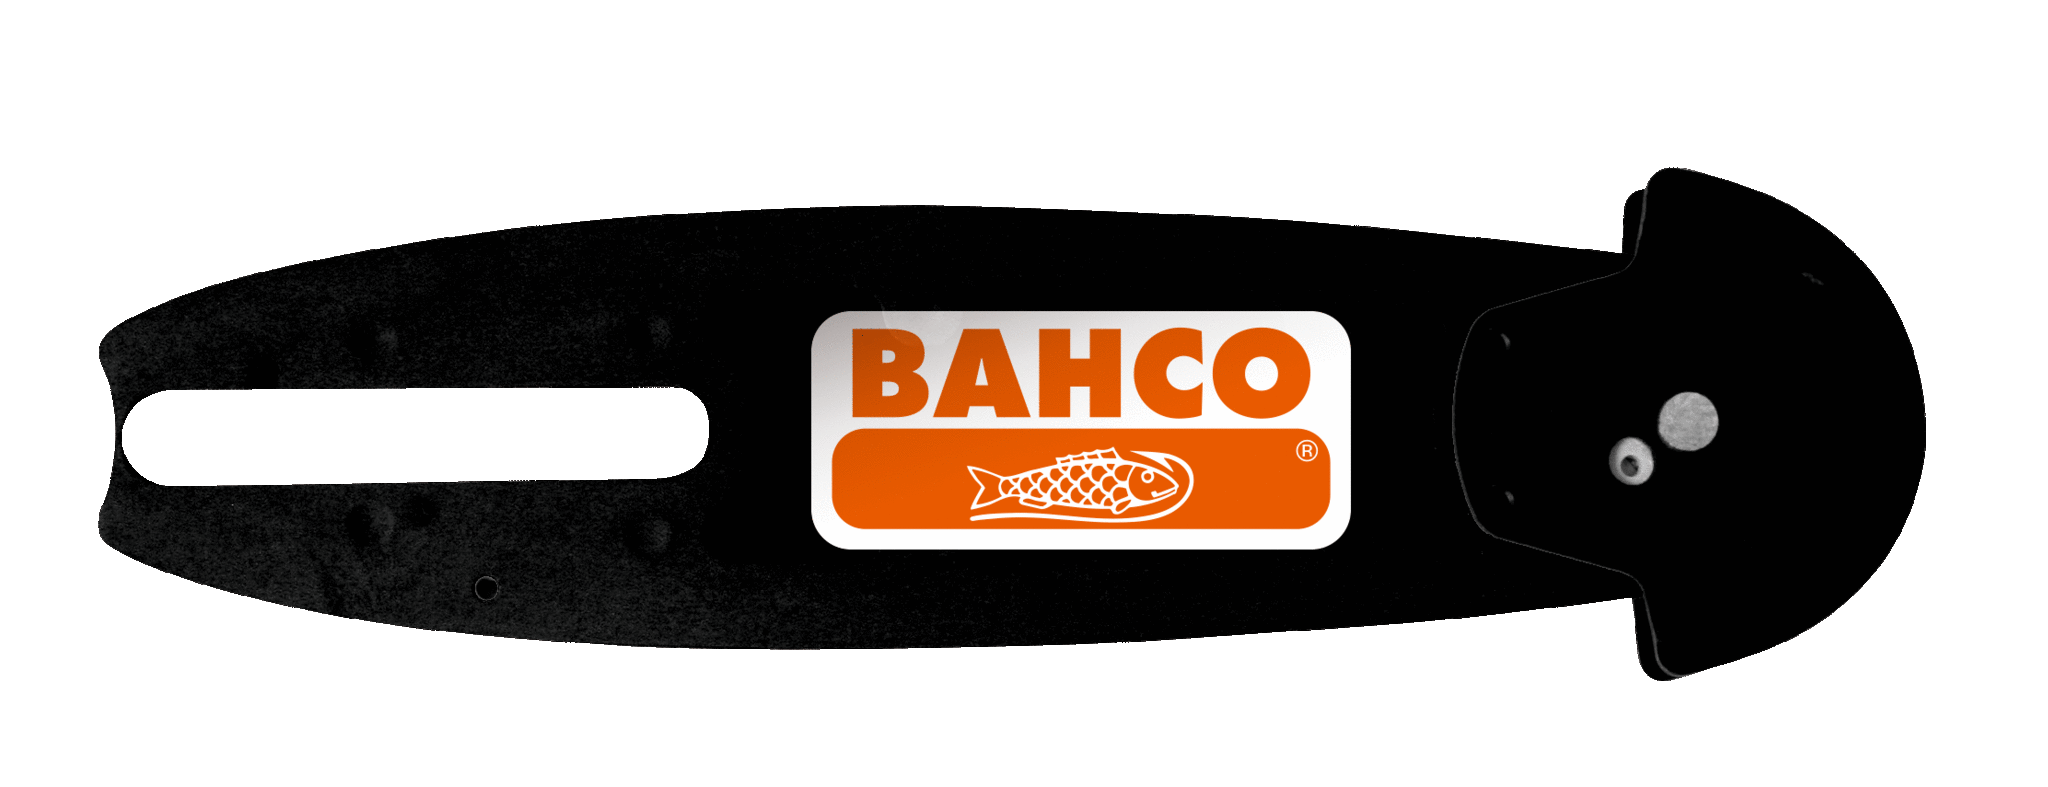 15-сантиметровая противоударная направляющая BAHCO BCL13G6